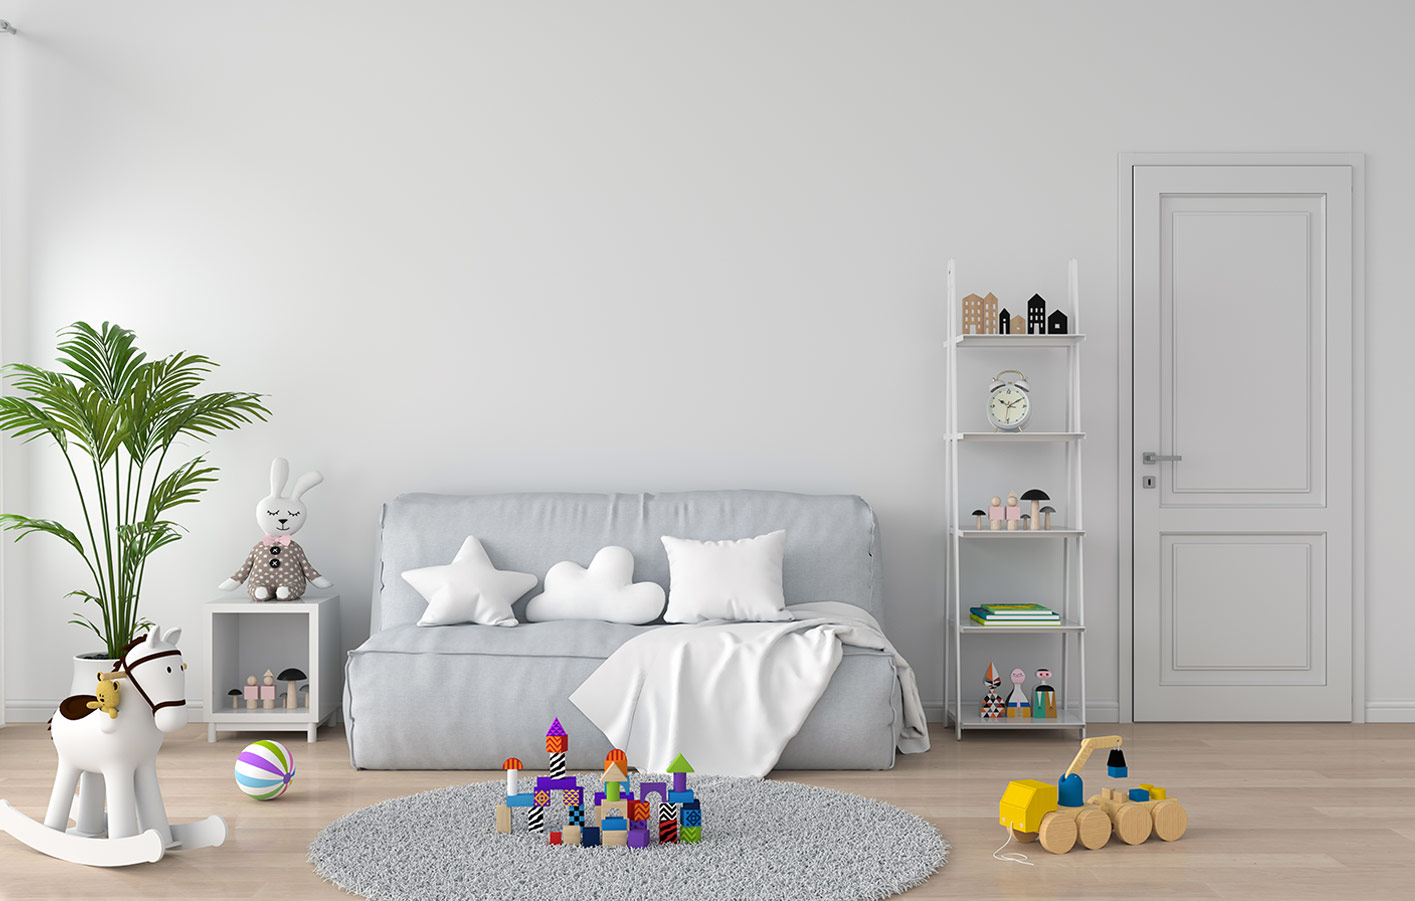 Kinderzimmer mit Couch und Spielzeug auf dem Boden